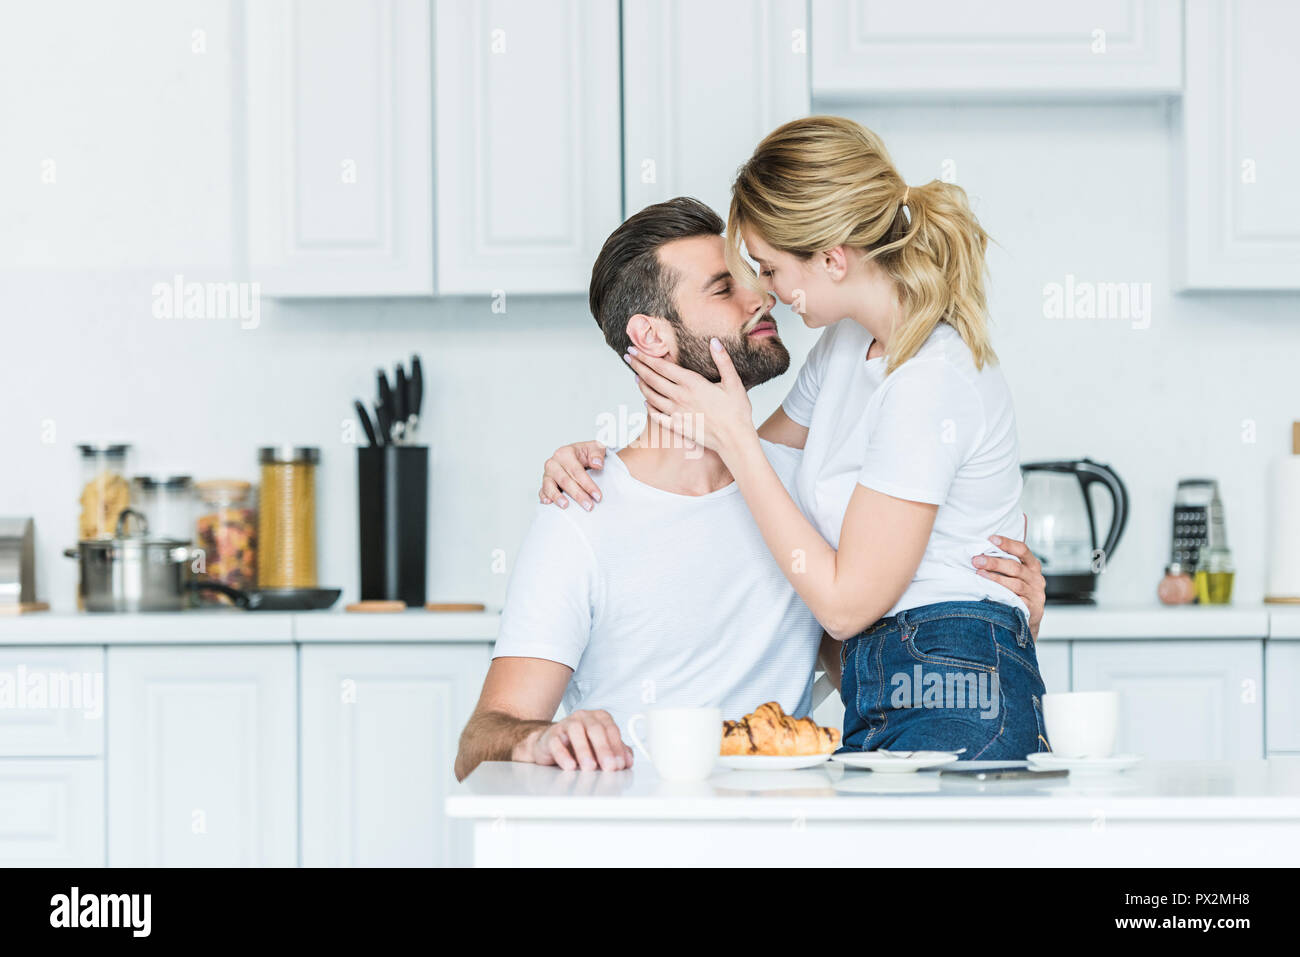 Schönes glückliches junges Paar in Liebe küssen beim Frühstück in der Küche  Stockfotografie - Alamy